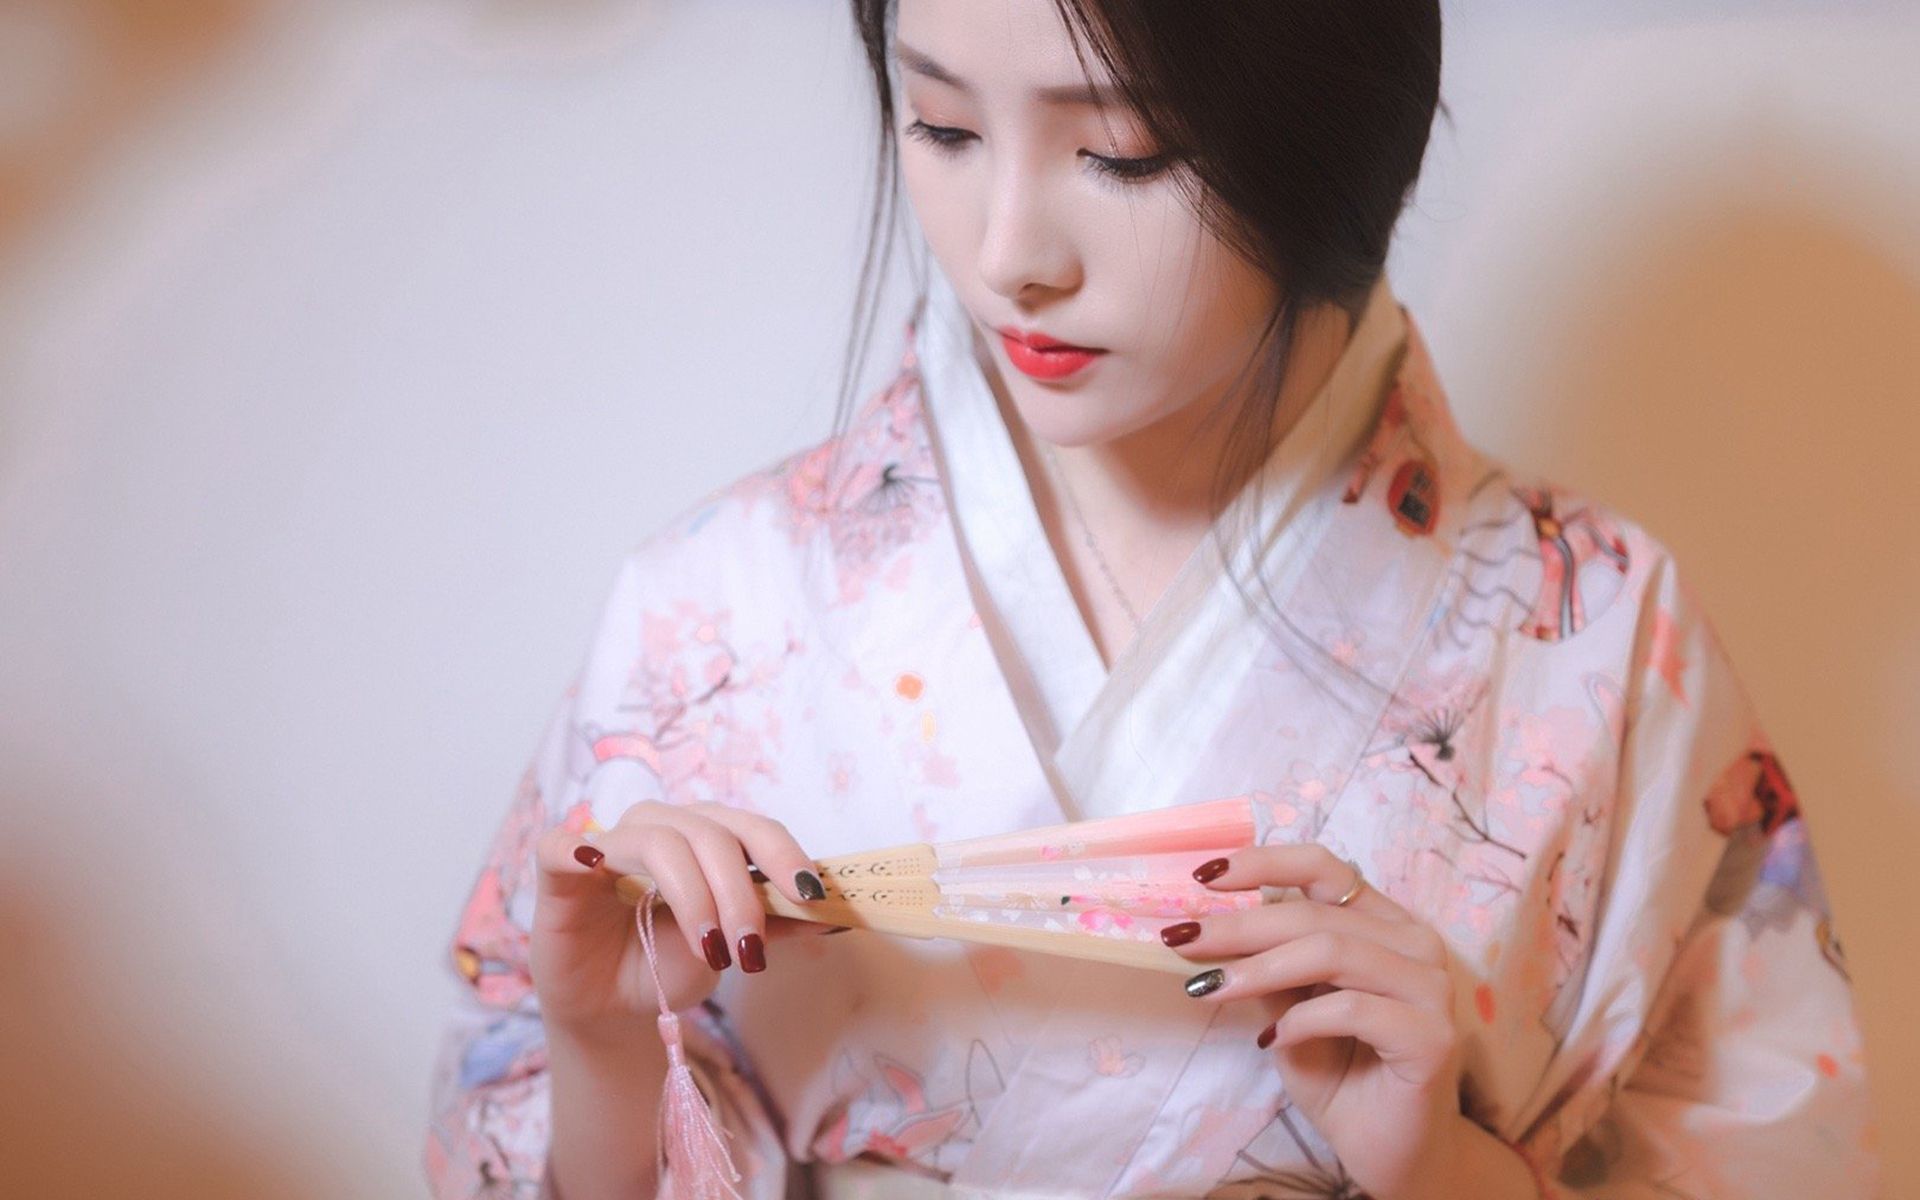 清纯美女身穿和服手拿折纸扇日系风格性感迷人高清壁纸